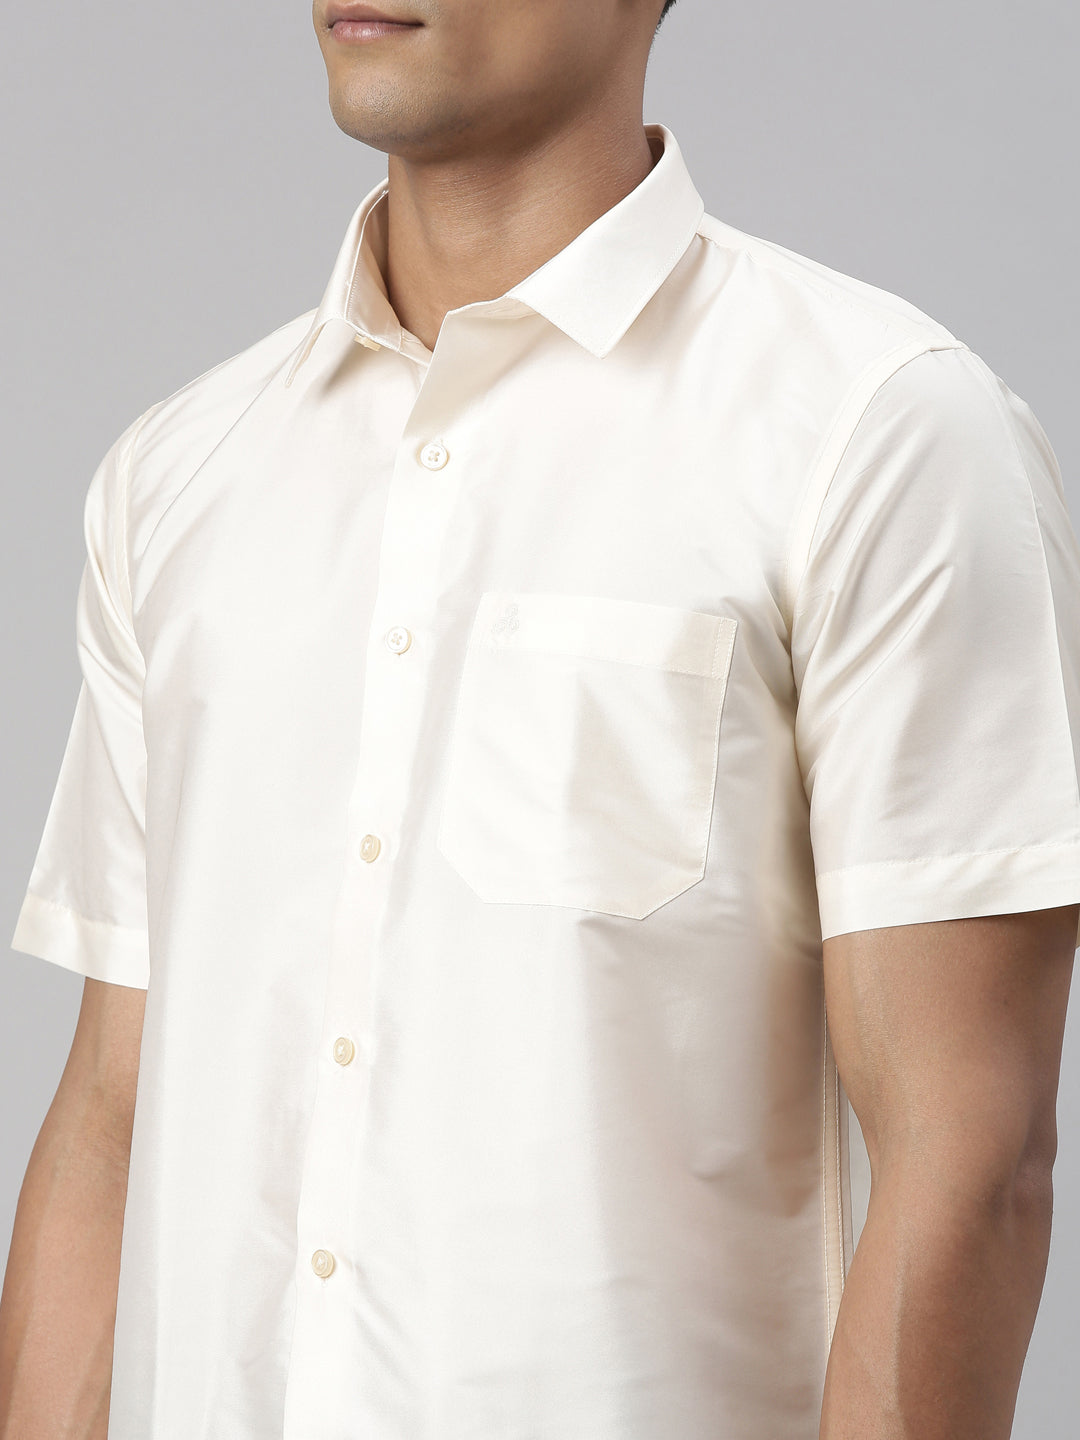 Tattva Mens White Colour Half sleeve Shirt